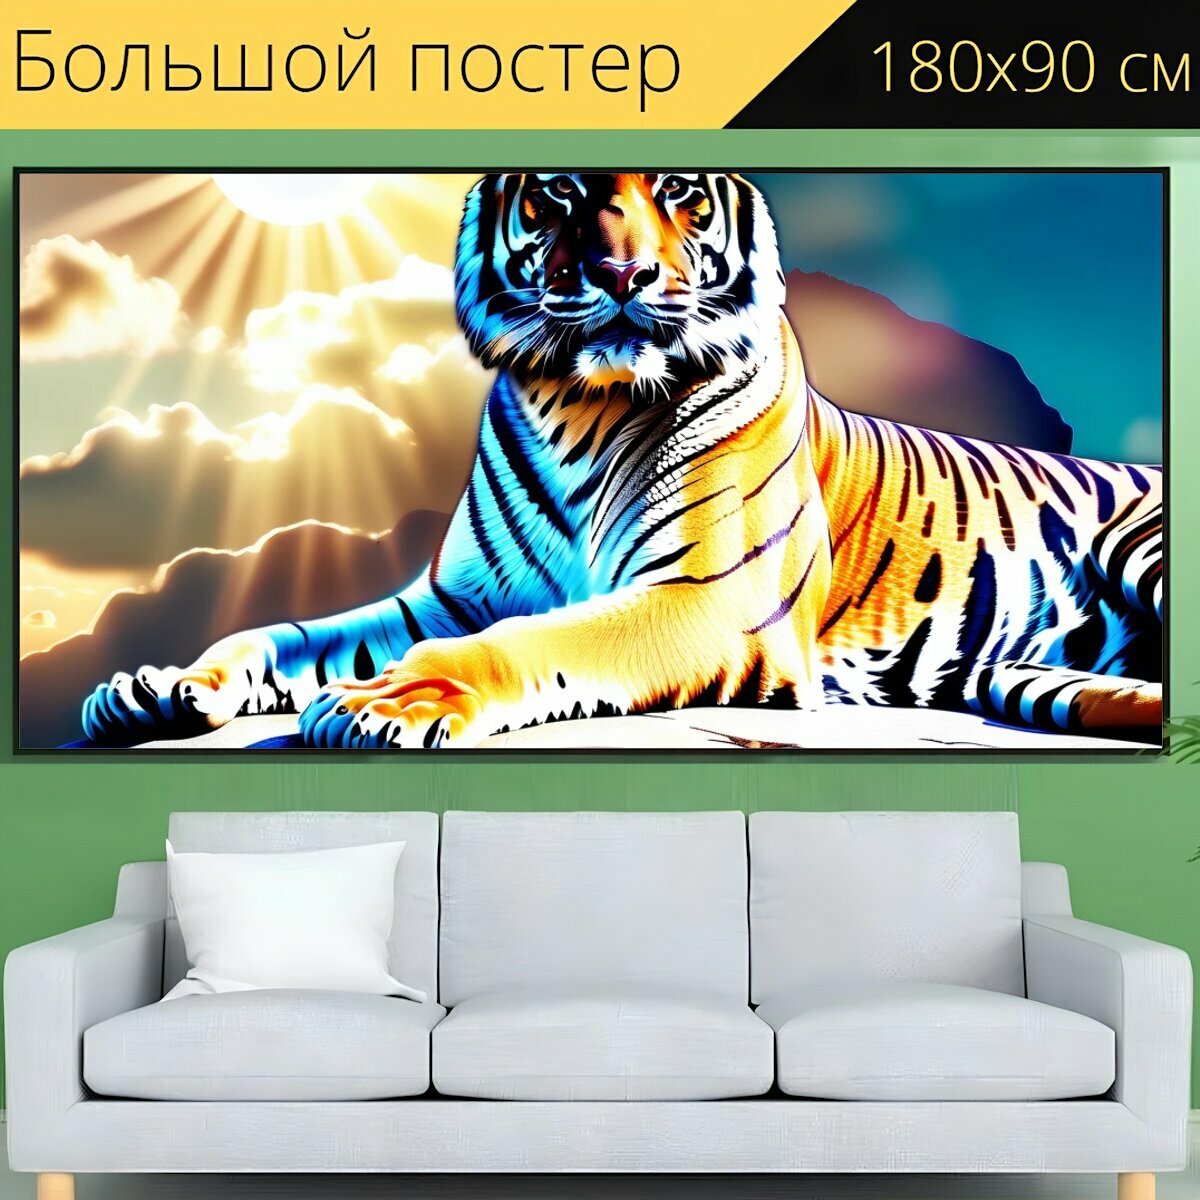 Большой постер зоологам "Животное, дикое, тигр, солнце, отдых" 180 x 90 см. для интерьера на стену